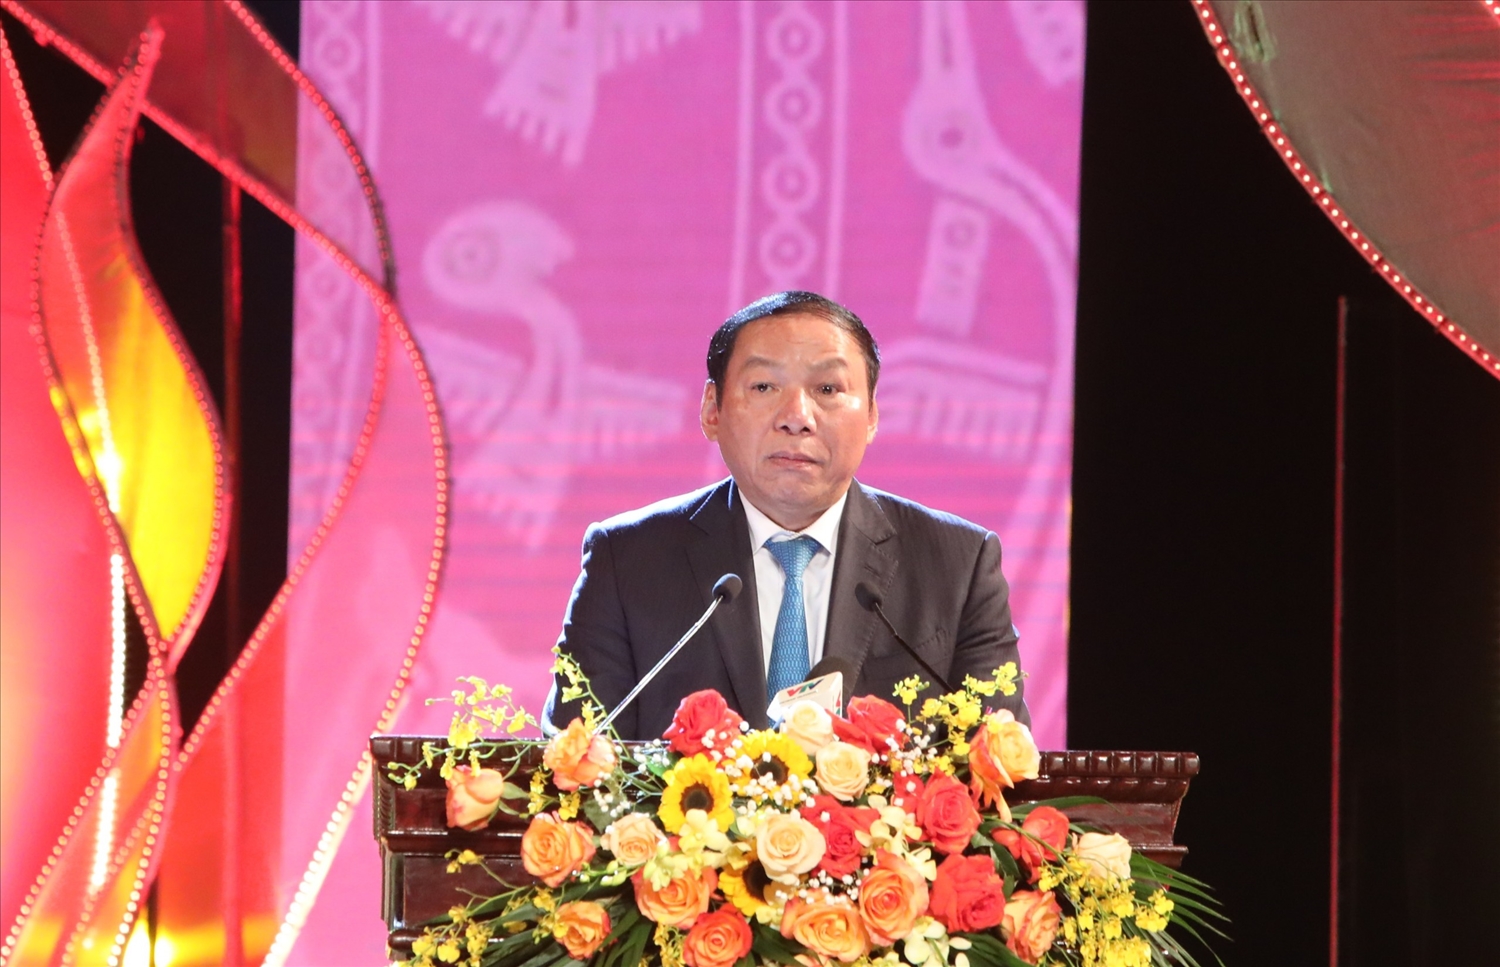 Bộ trưởng Bộ Văn hóa, Thể thao và Du lịch Nguyễn Văn Hùng phát biểu khai mạc Chương trình